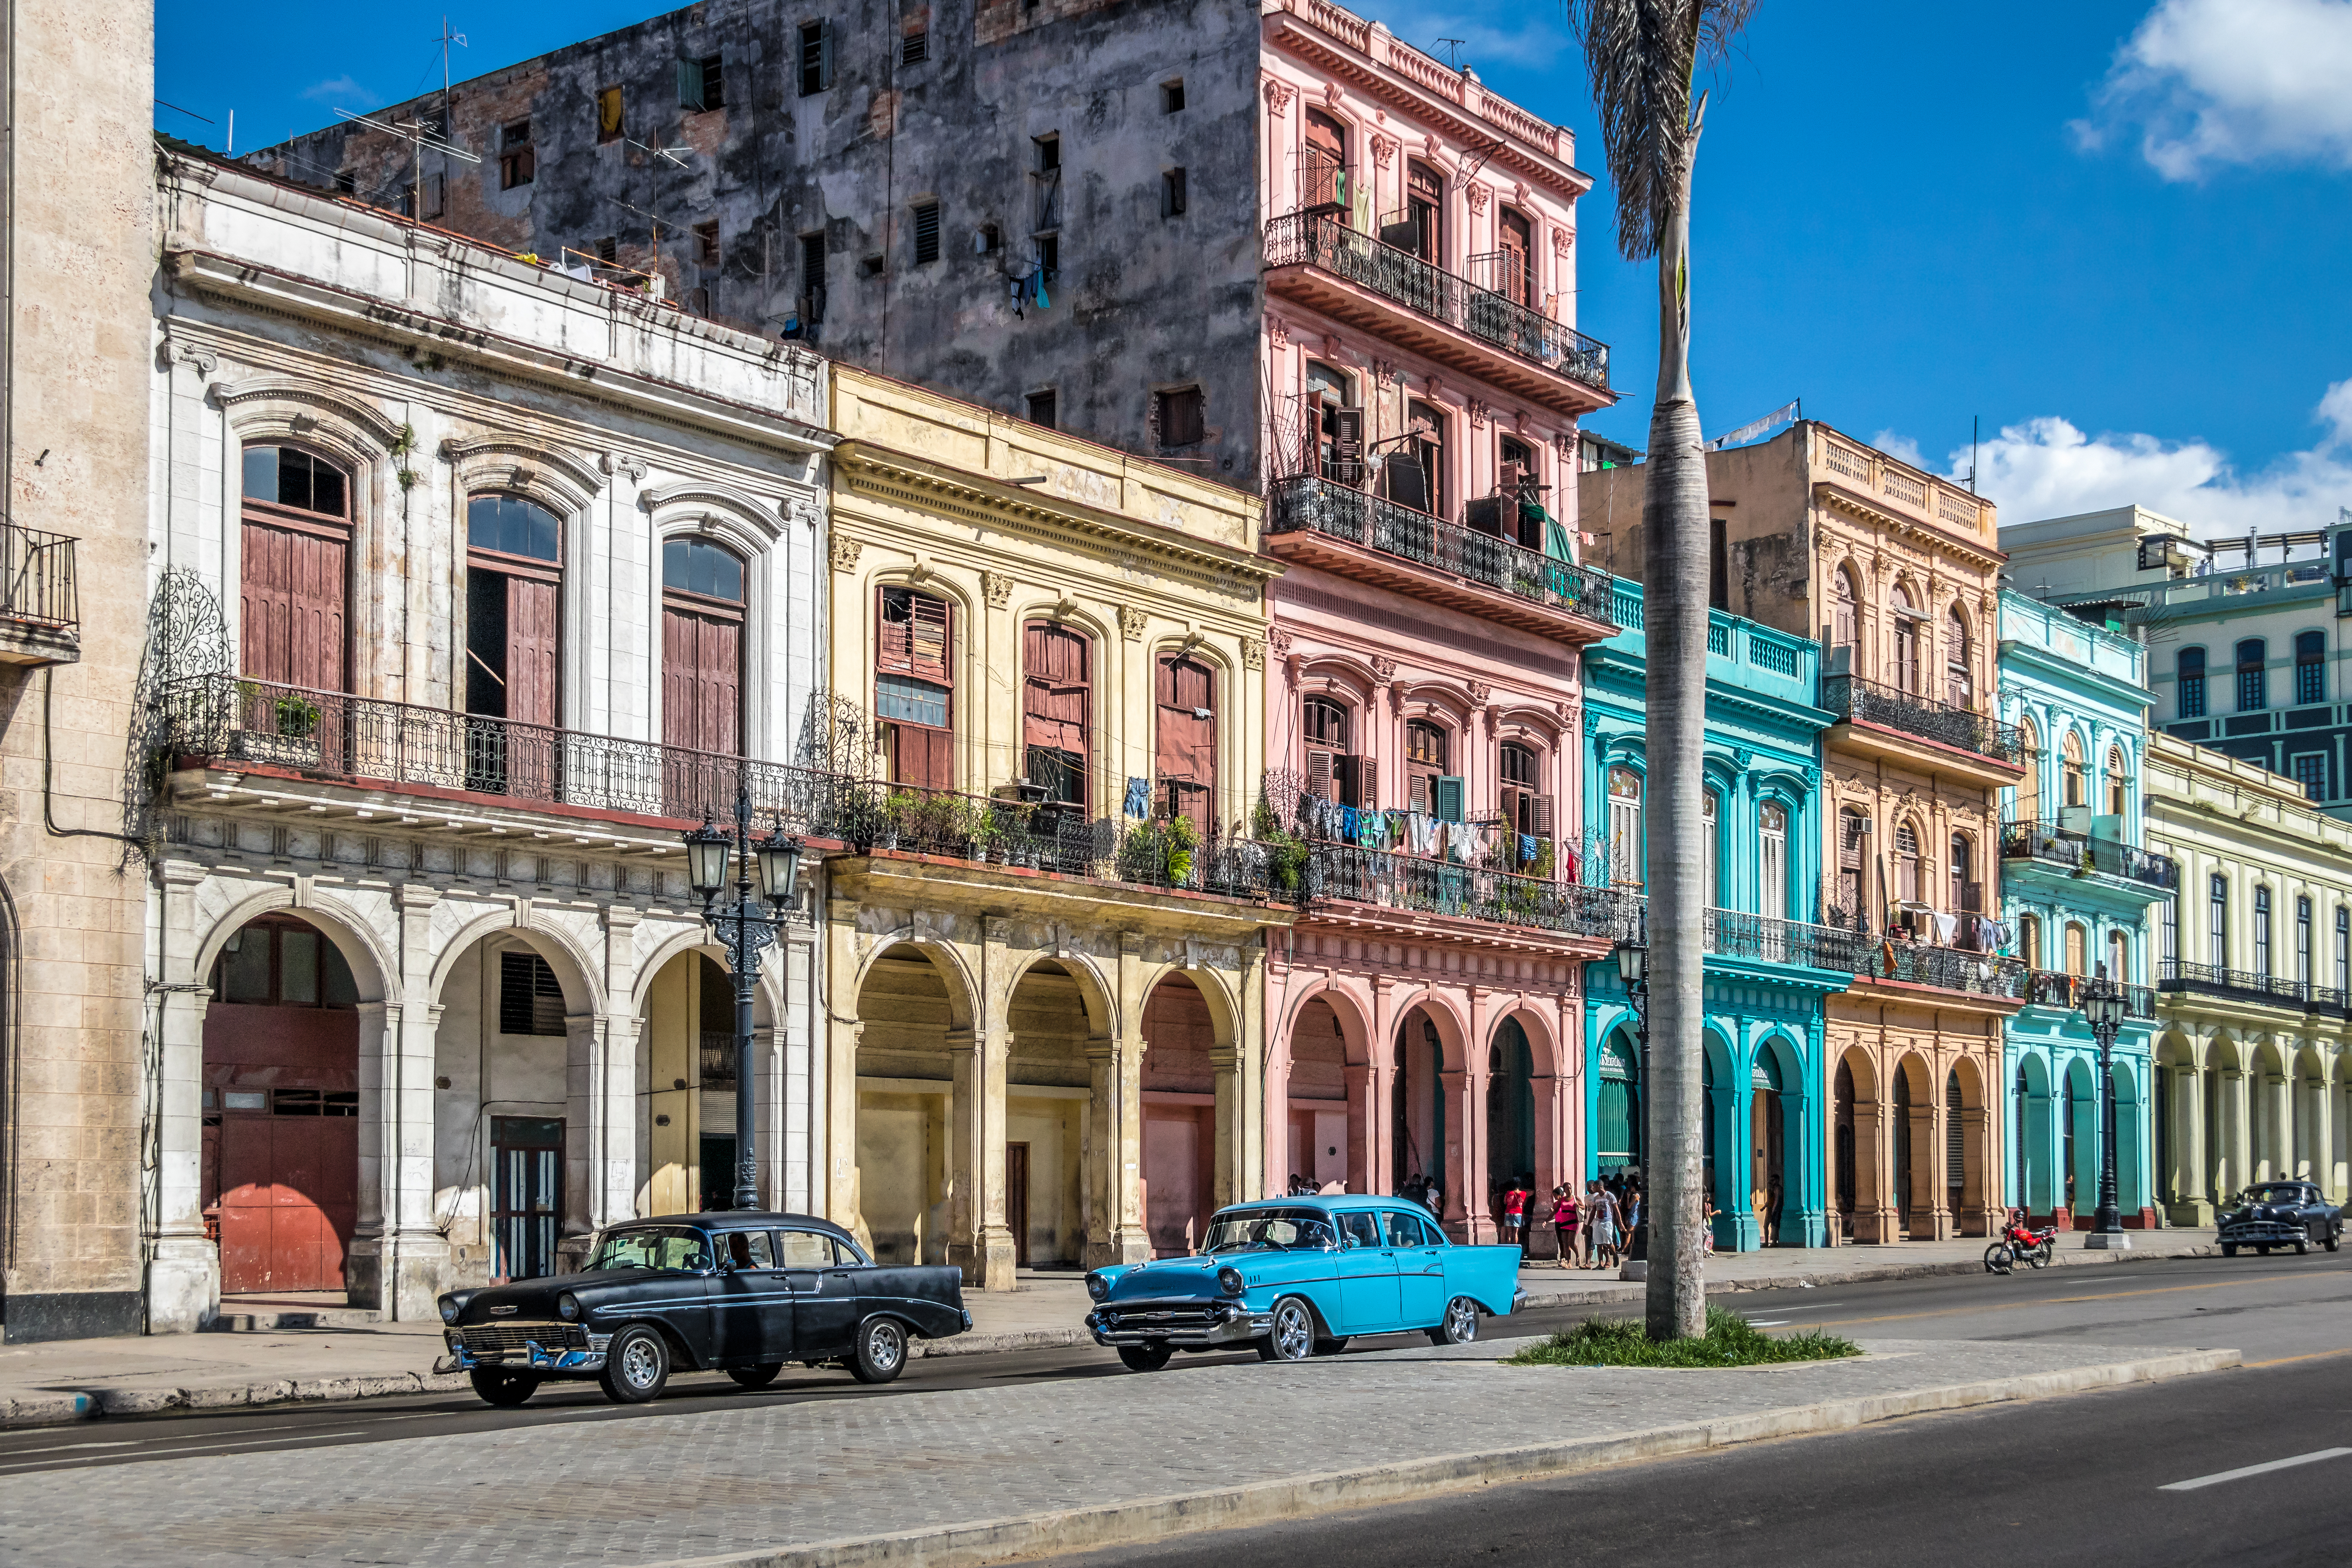     Les Cubains doivent faire face à une nouvelle pénurie de carburant

